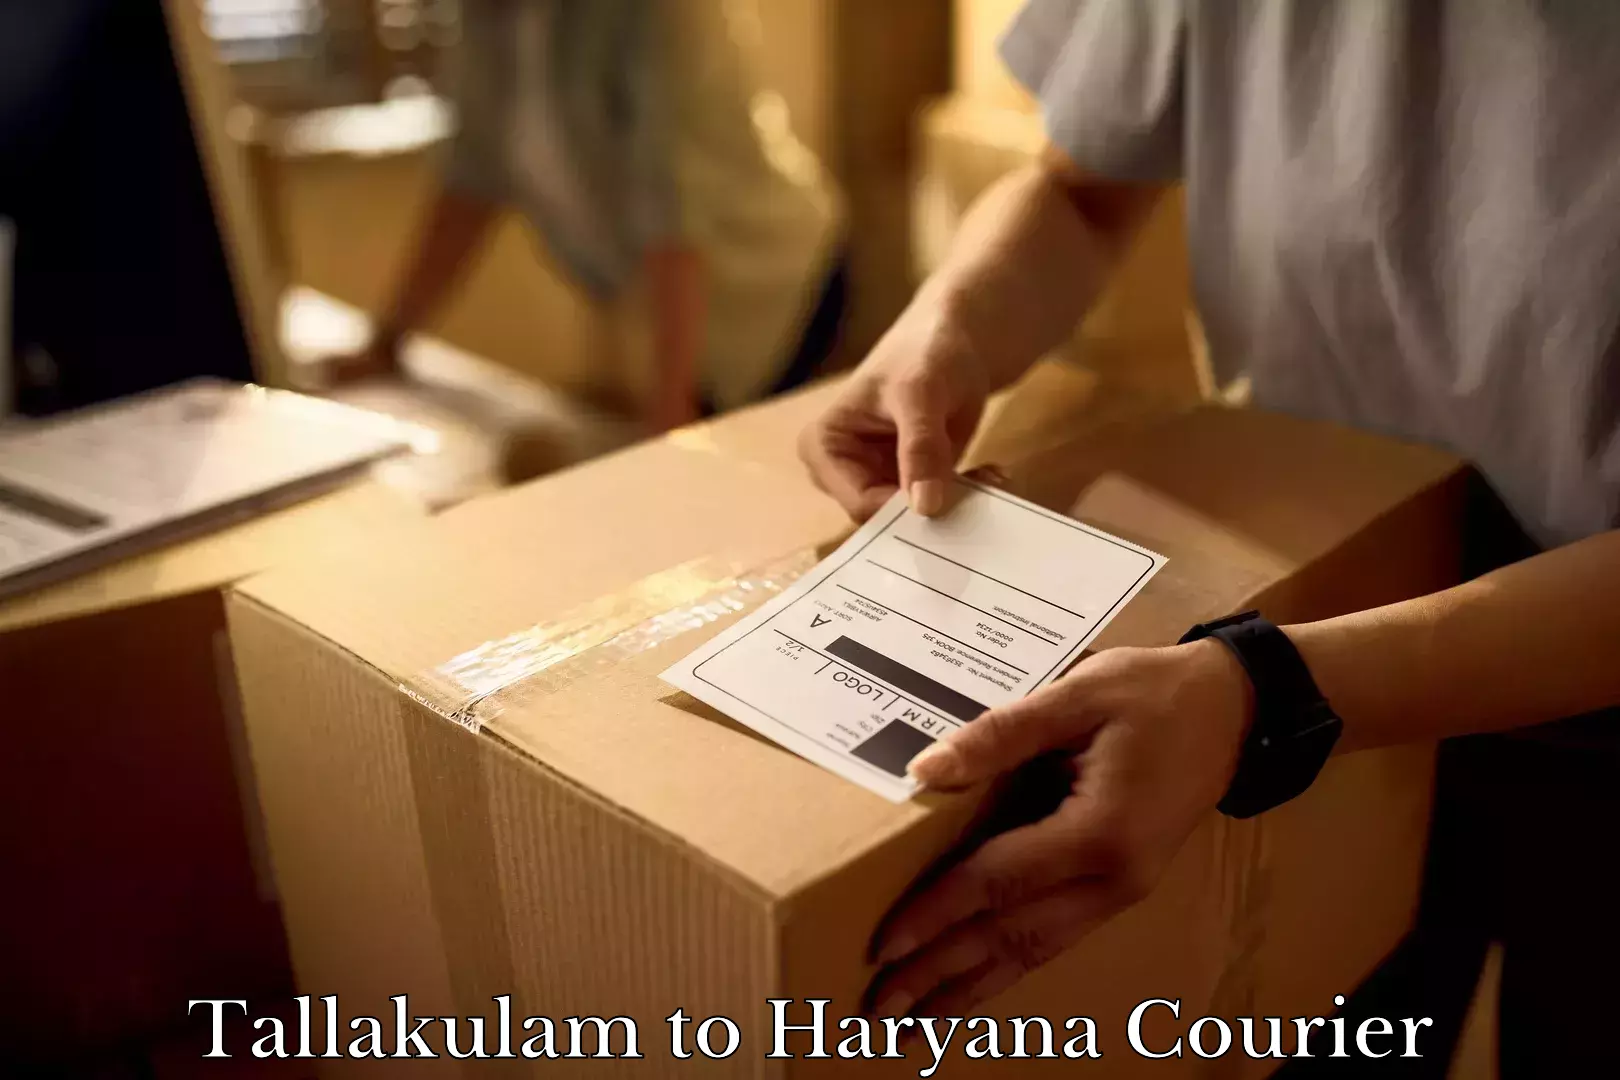 Furniture moving experts Tallakulam to Chaudhary Charan Singh Haryana Agricultural University Hisar